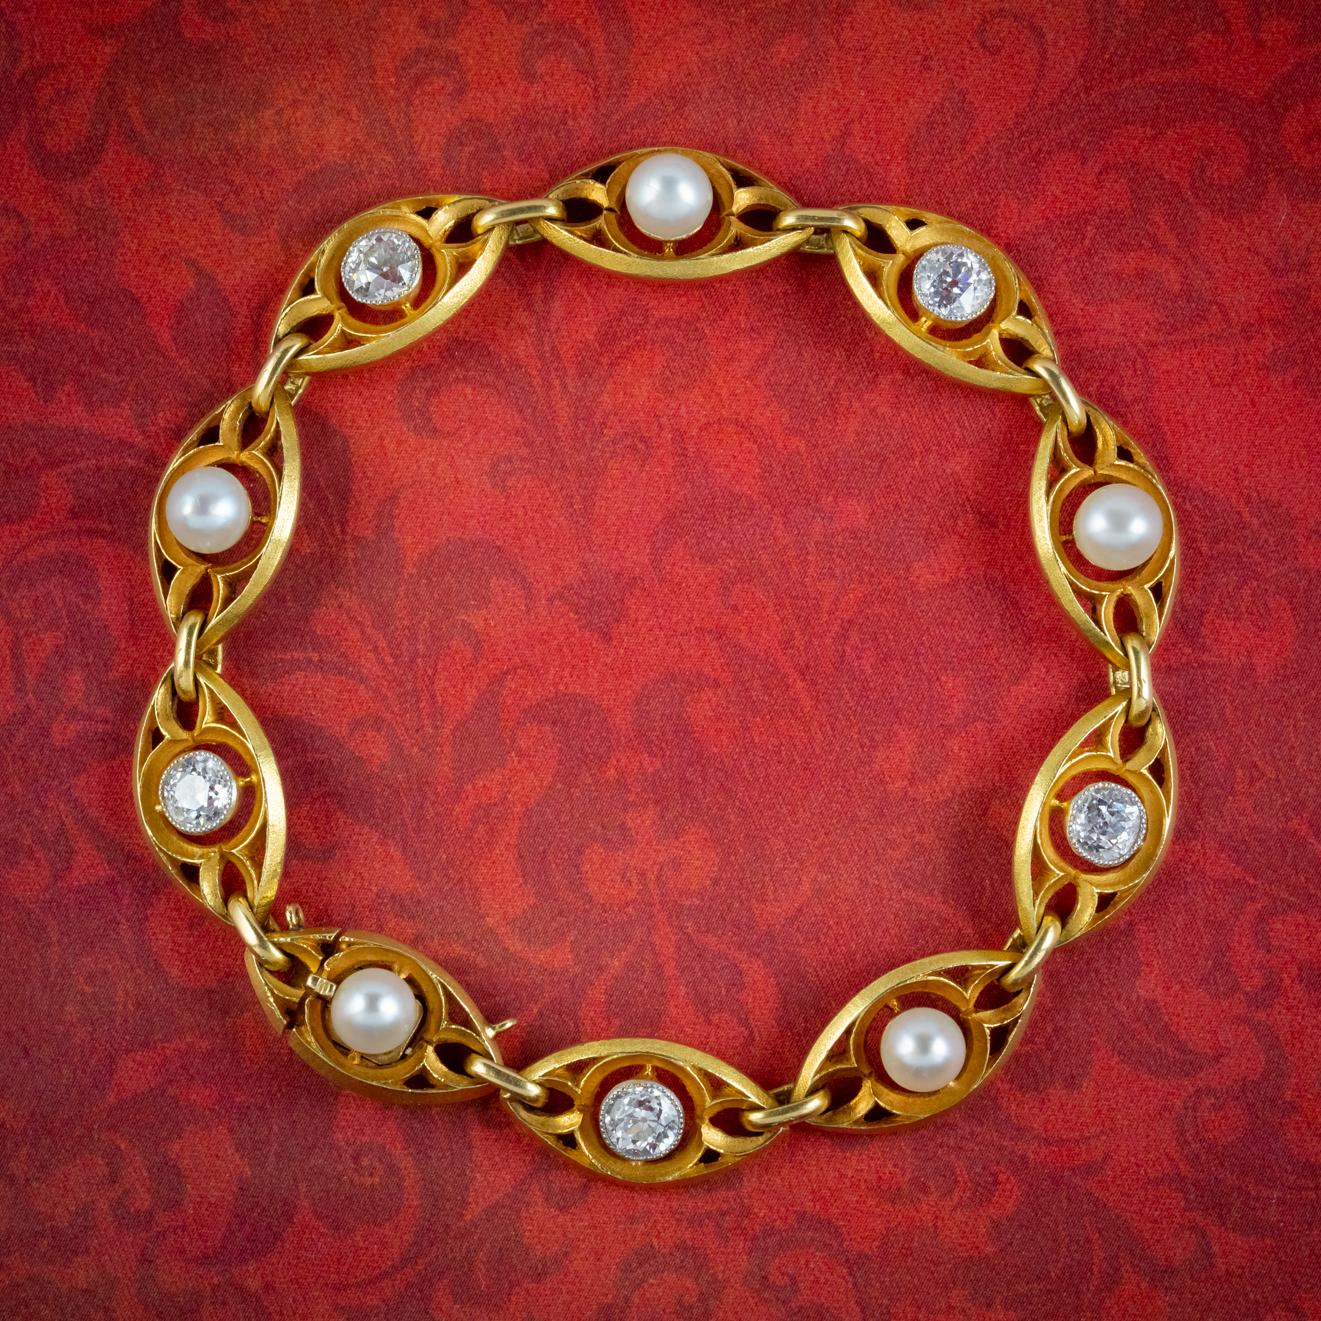 Ein atemberaubendes antikes Jugendstil-Armband, das in Frankreich an der Wende zum 20. Das Schmuckstück besteht aus massiven 18-karätigen Gelbgoldgliedern, die mit einer natürlichen Perle oder einem funkelnden Diamanten mit altem europäischem